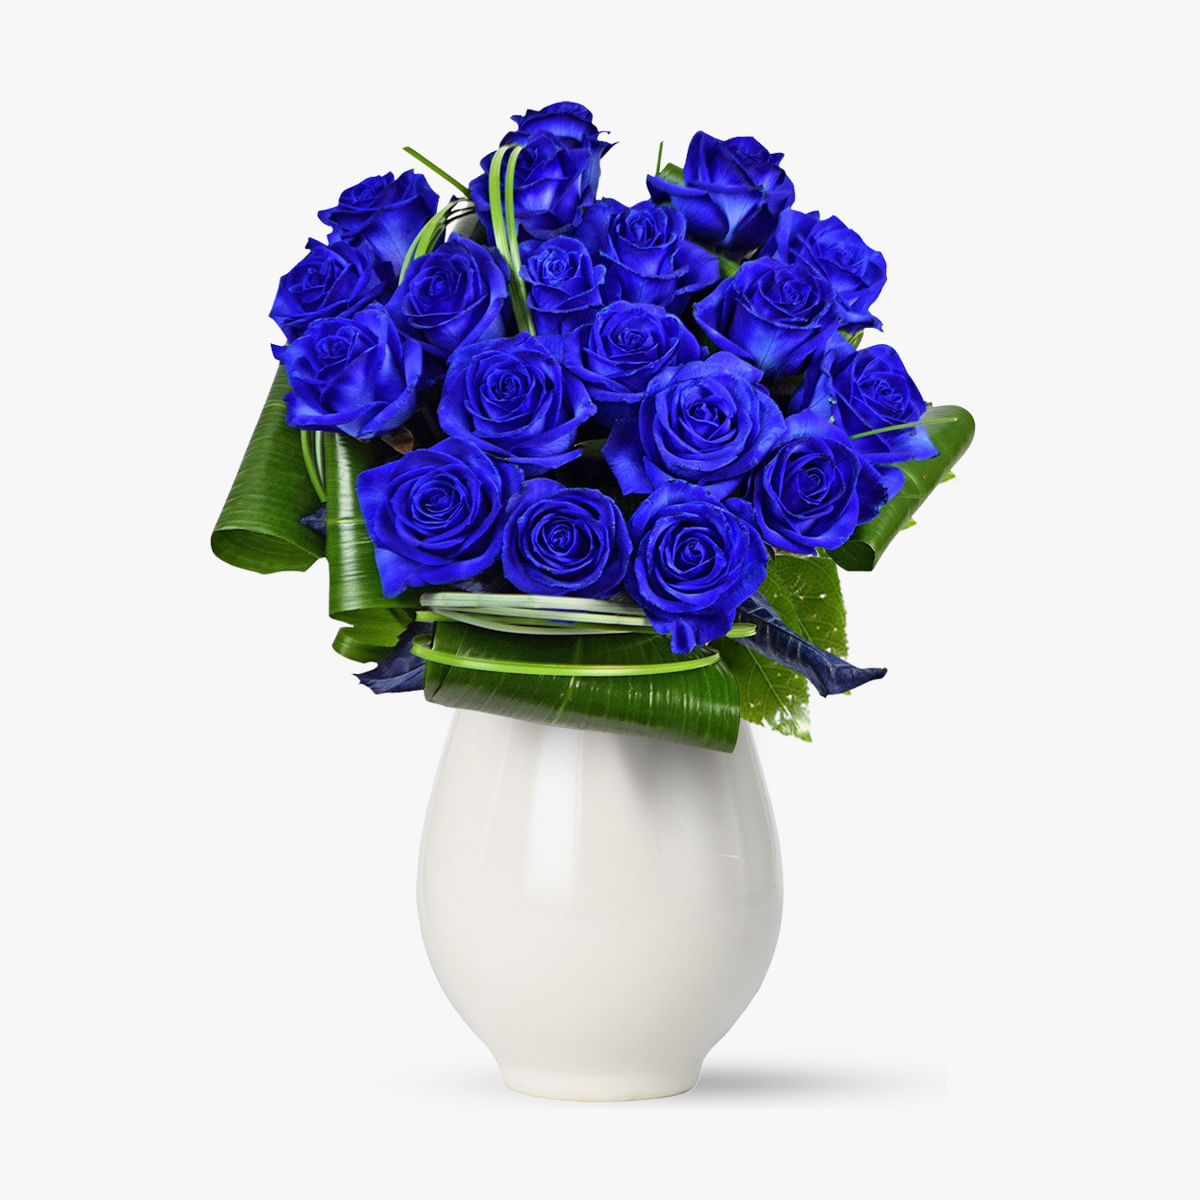 Buchet de 19 trandafiri albastri – Standard